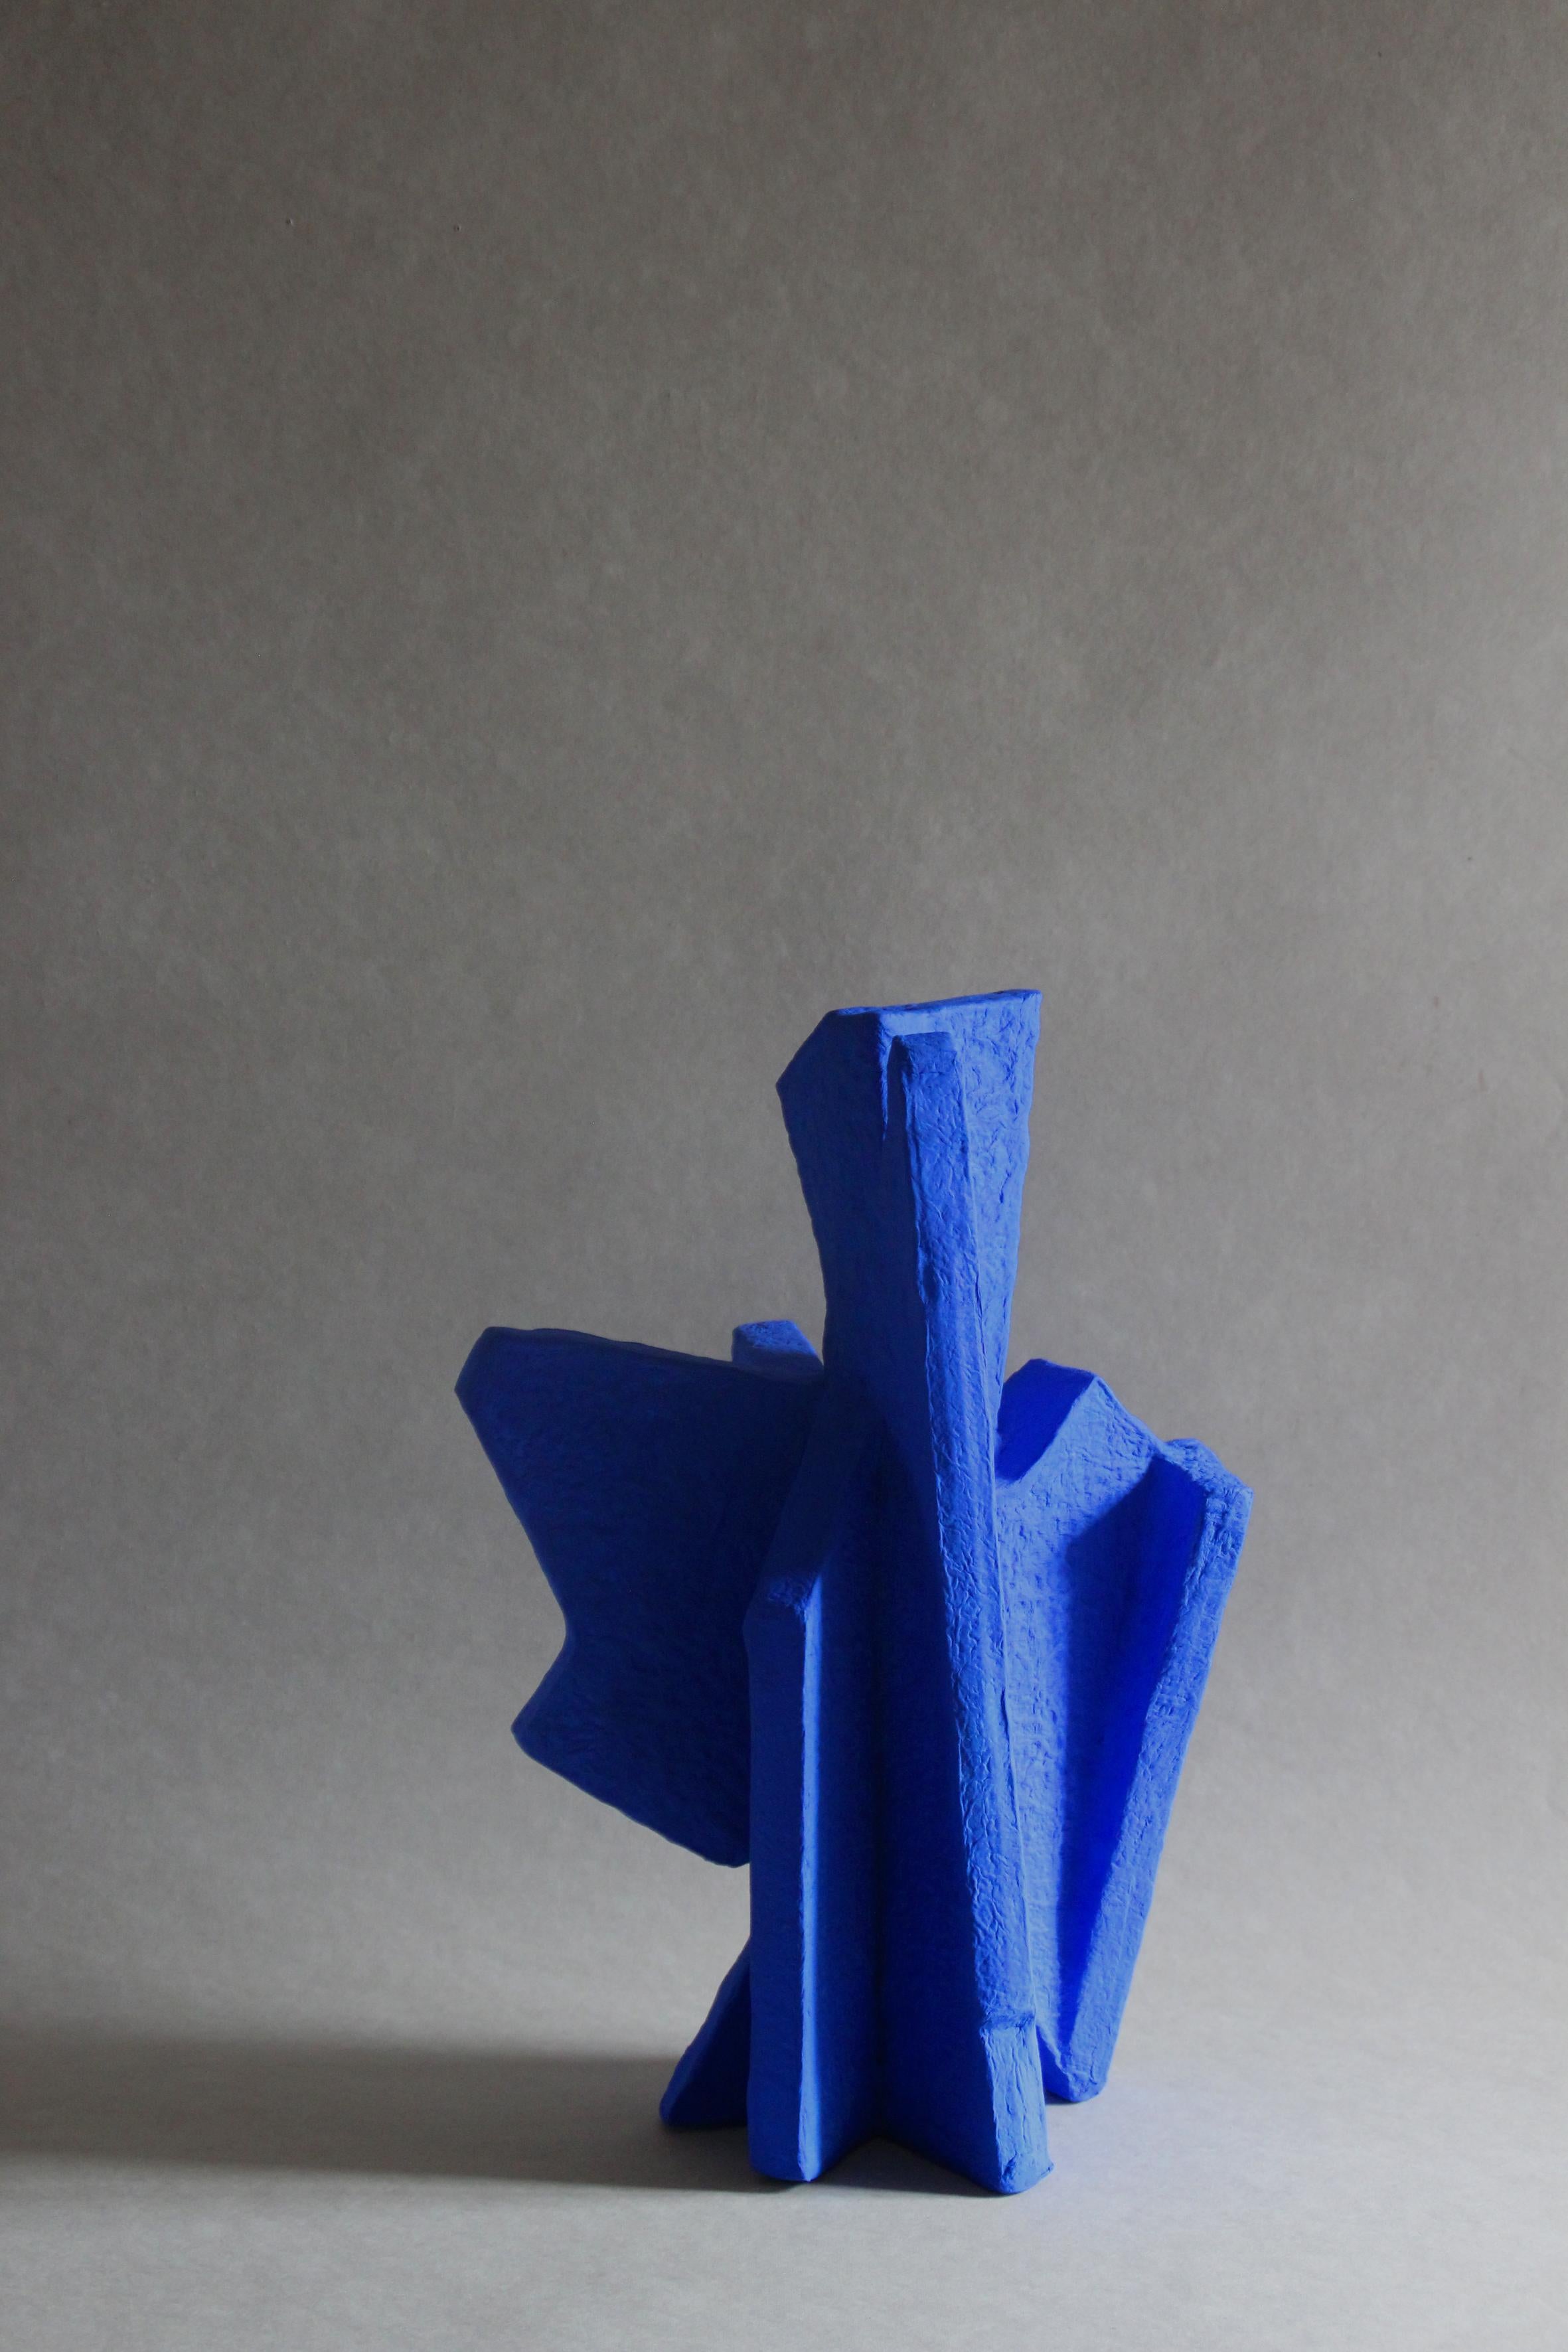 Grande particule bleue
Taille : L 300 P 250 H 420 mm

L'art de la matière.
Sculptures géométriques en papier fait main, de formes, tailles et couleurs variées.

[PAPIER LANGACKERHA¨USL]
